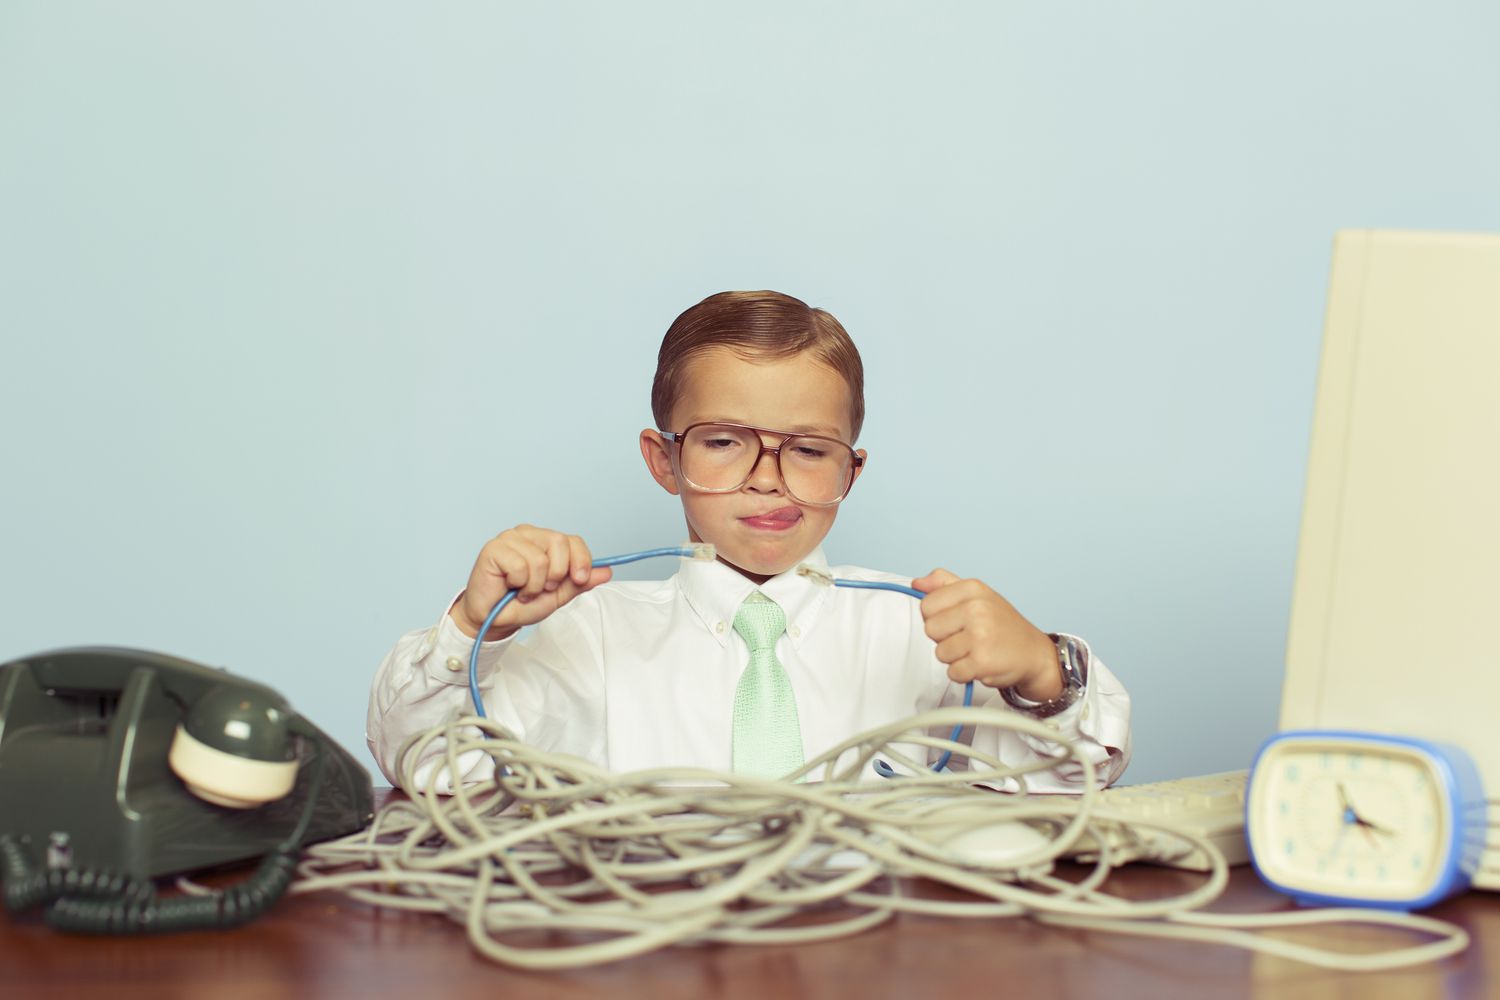 garoto trabalhando com uma grande pilha de cabos de internet emaranhados em sua mesa